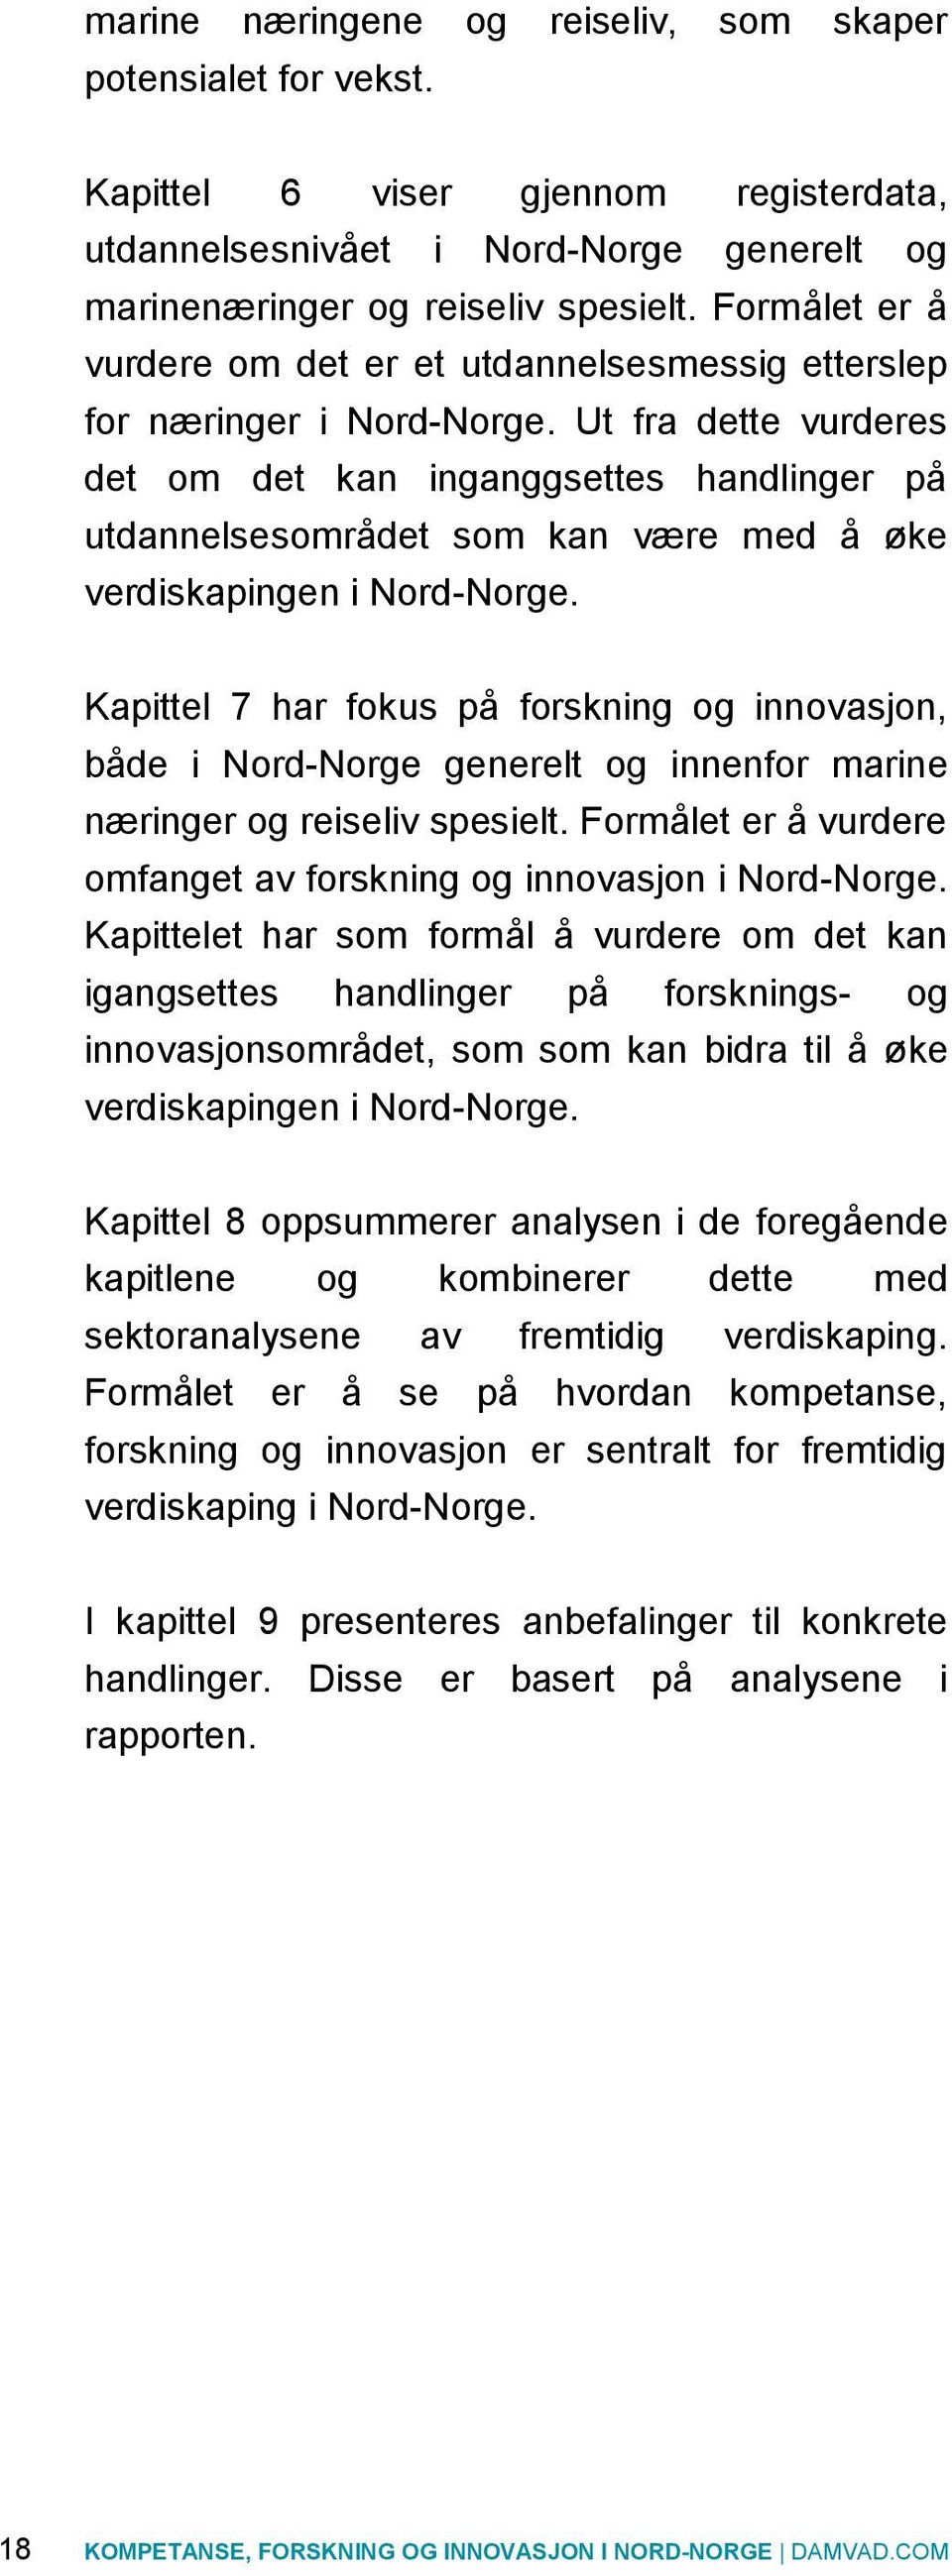 Ut fra dette vurderes det om det kan inganggsettes handlinger på utdannelsesområdet som kan være med å øke verdiskapingen i Nord-Norge.